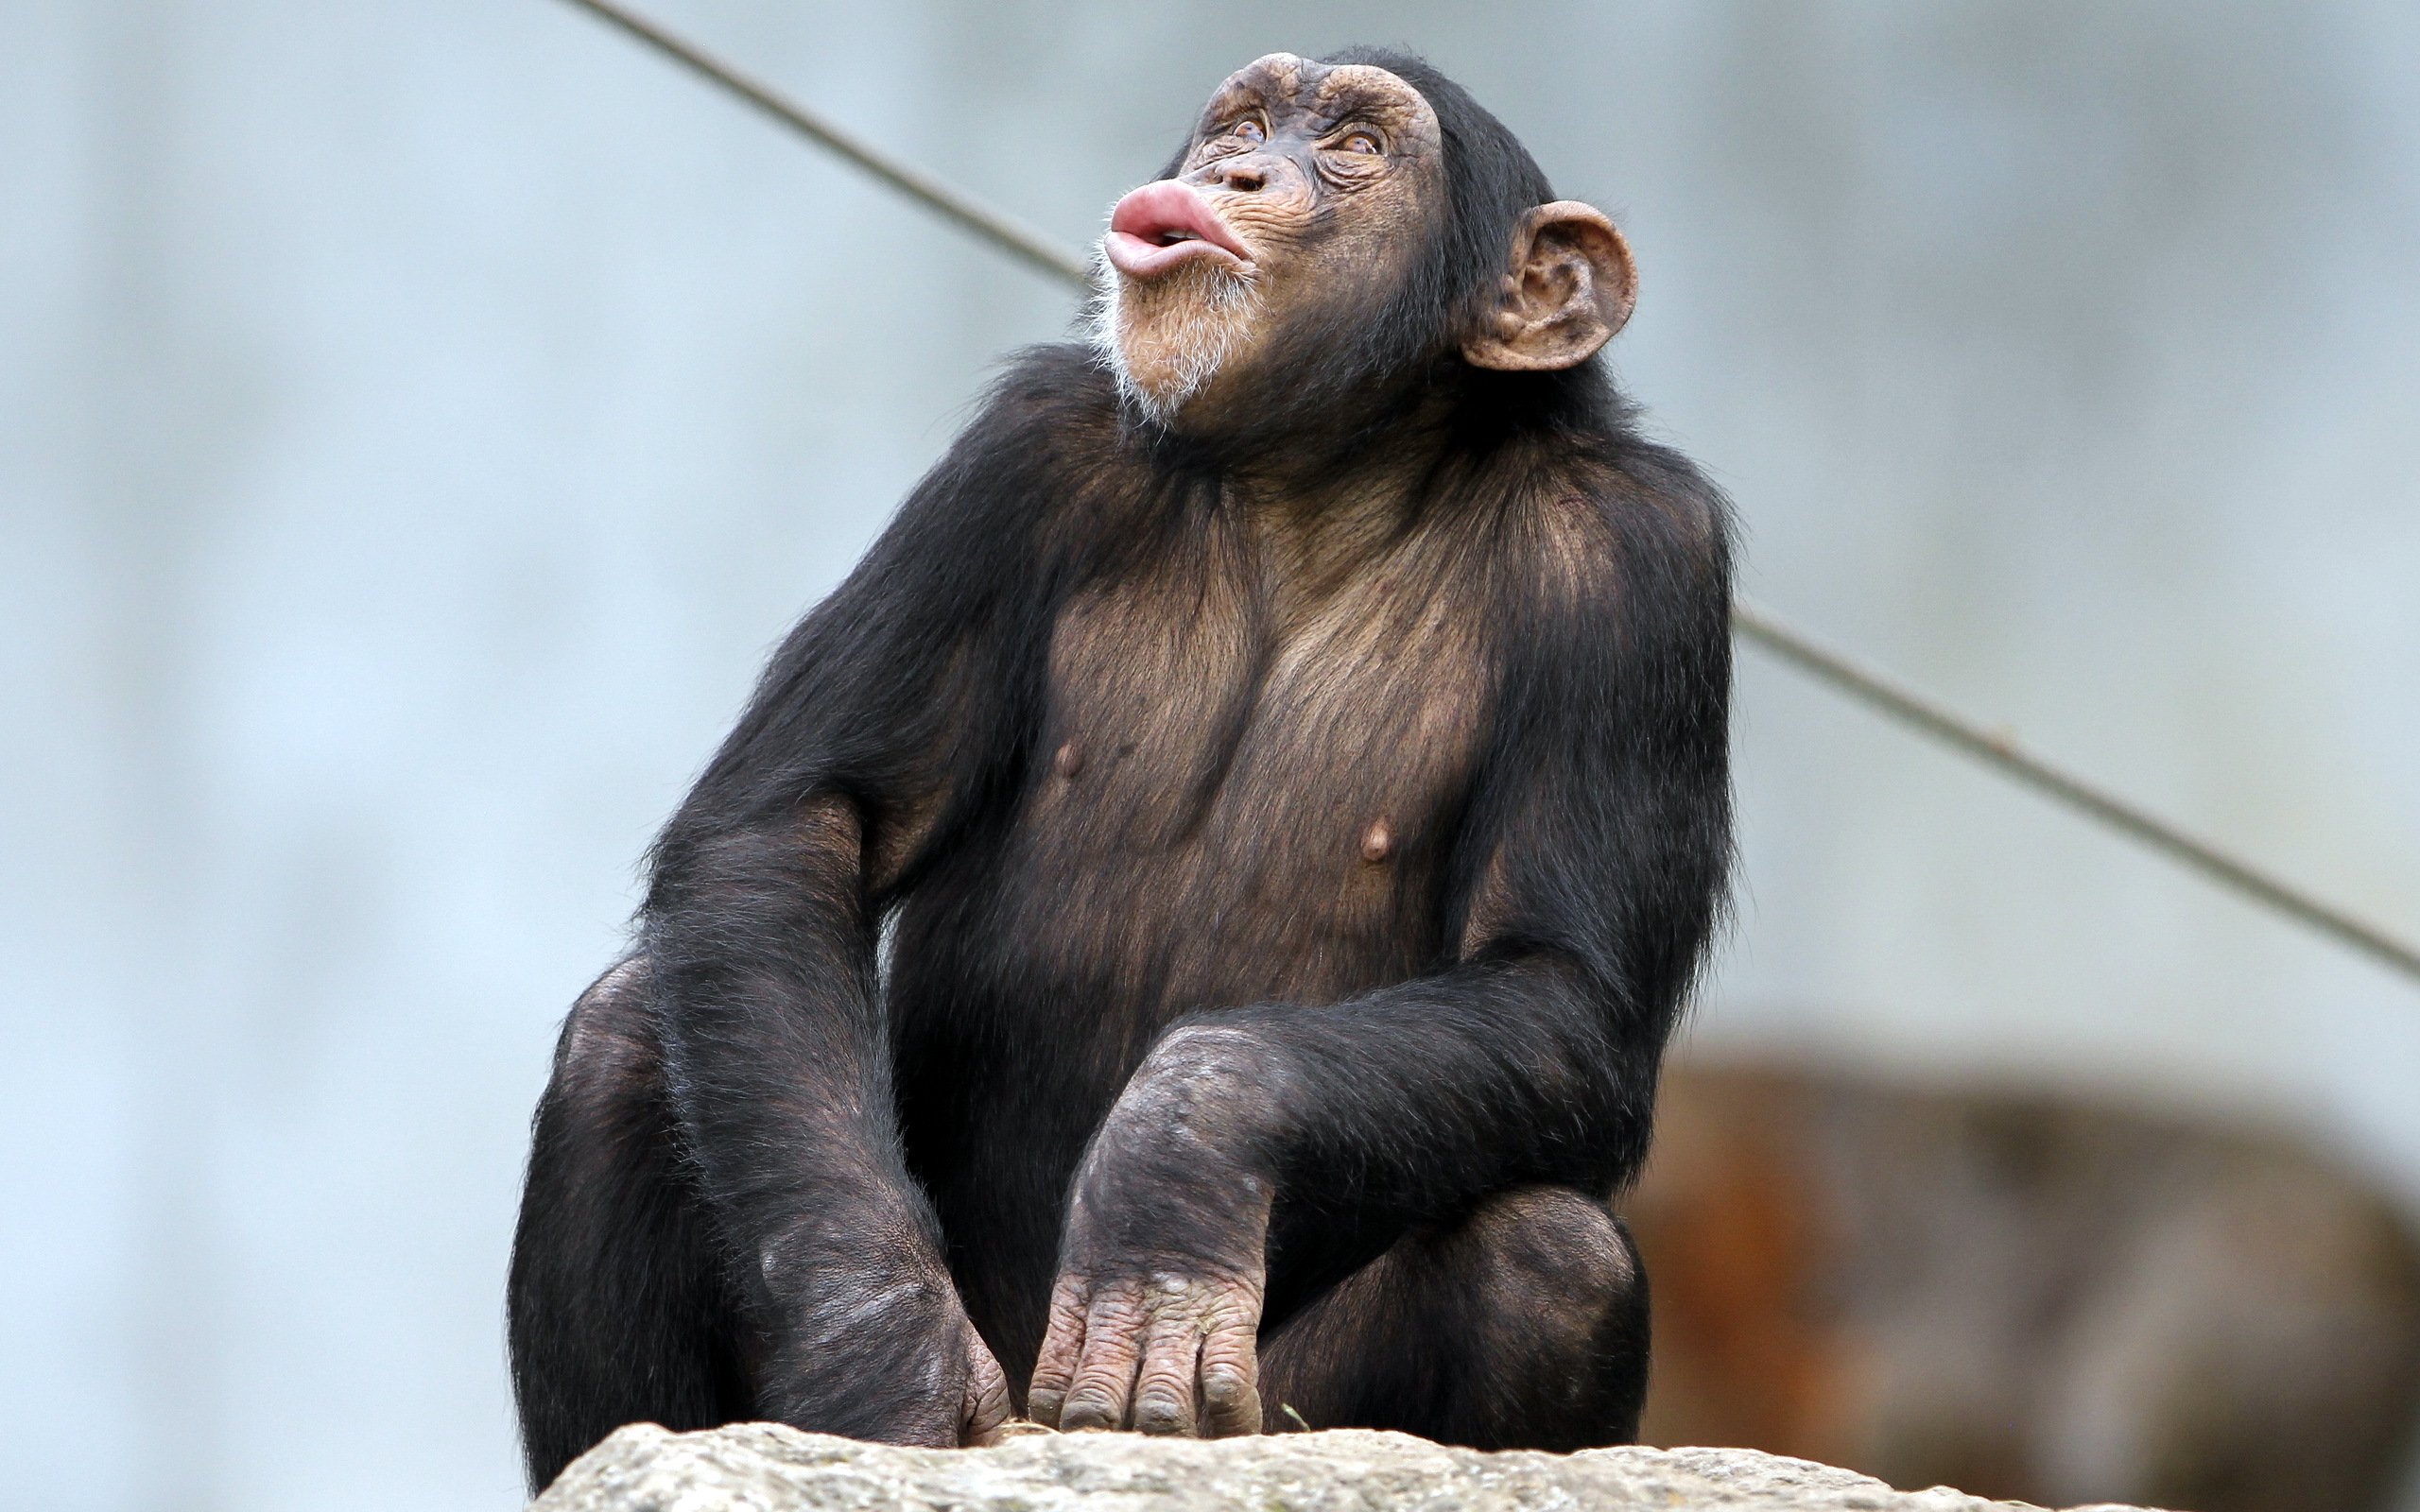 Download mobile wallpaper Monkeys, Monkey, Animal, Chimpanzee for free.